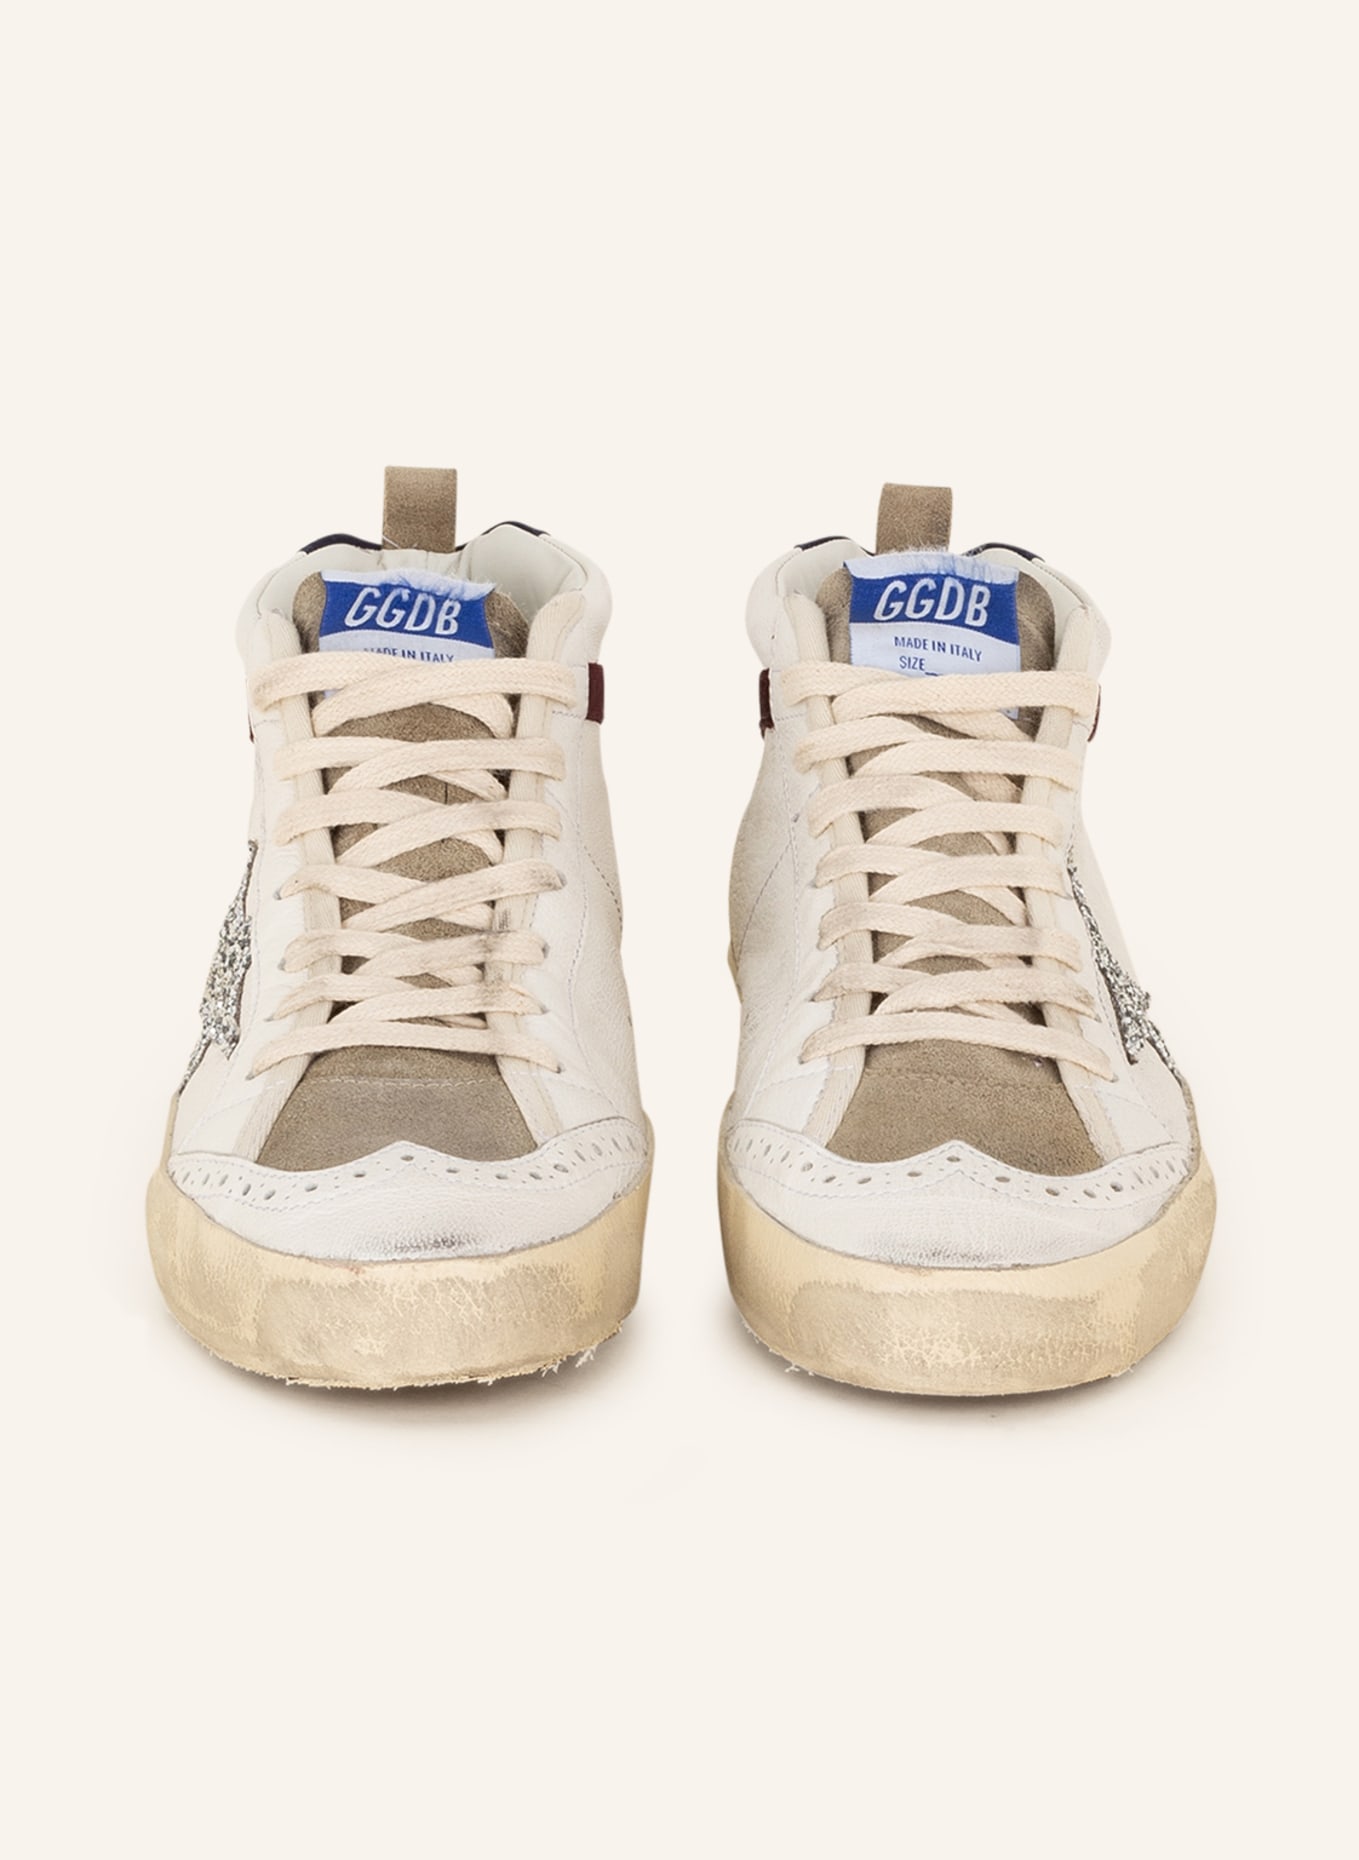 GOLDEN GOOSE Hightop-Sneaker MID STAR, Farbe: WEISS/ GRAU/ DUNKELROT (Bild 3)